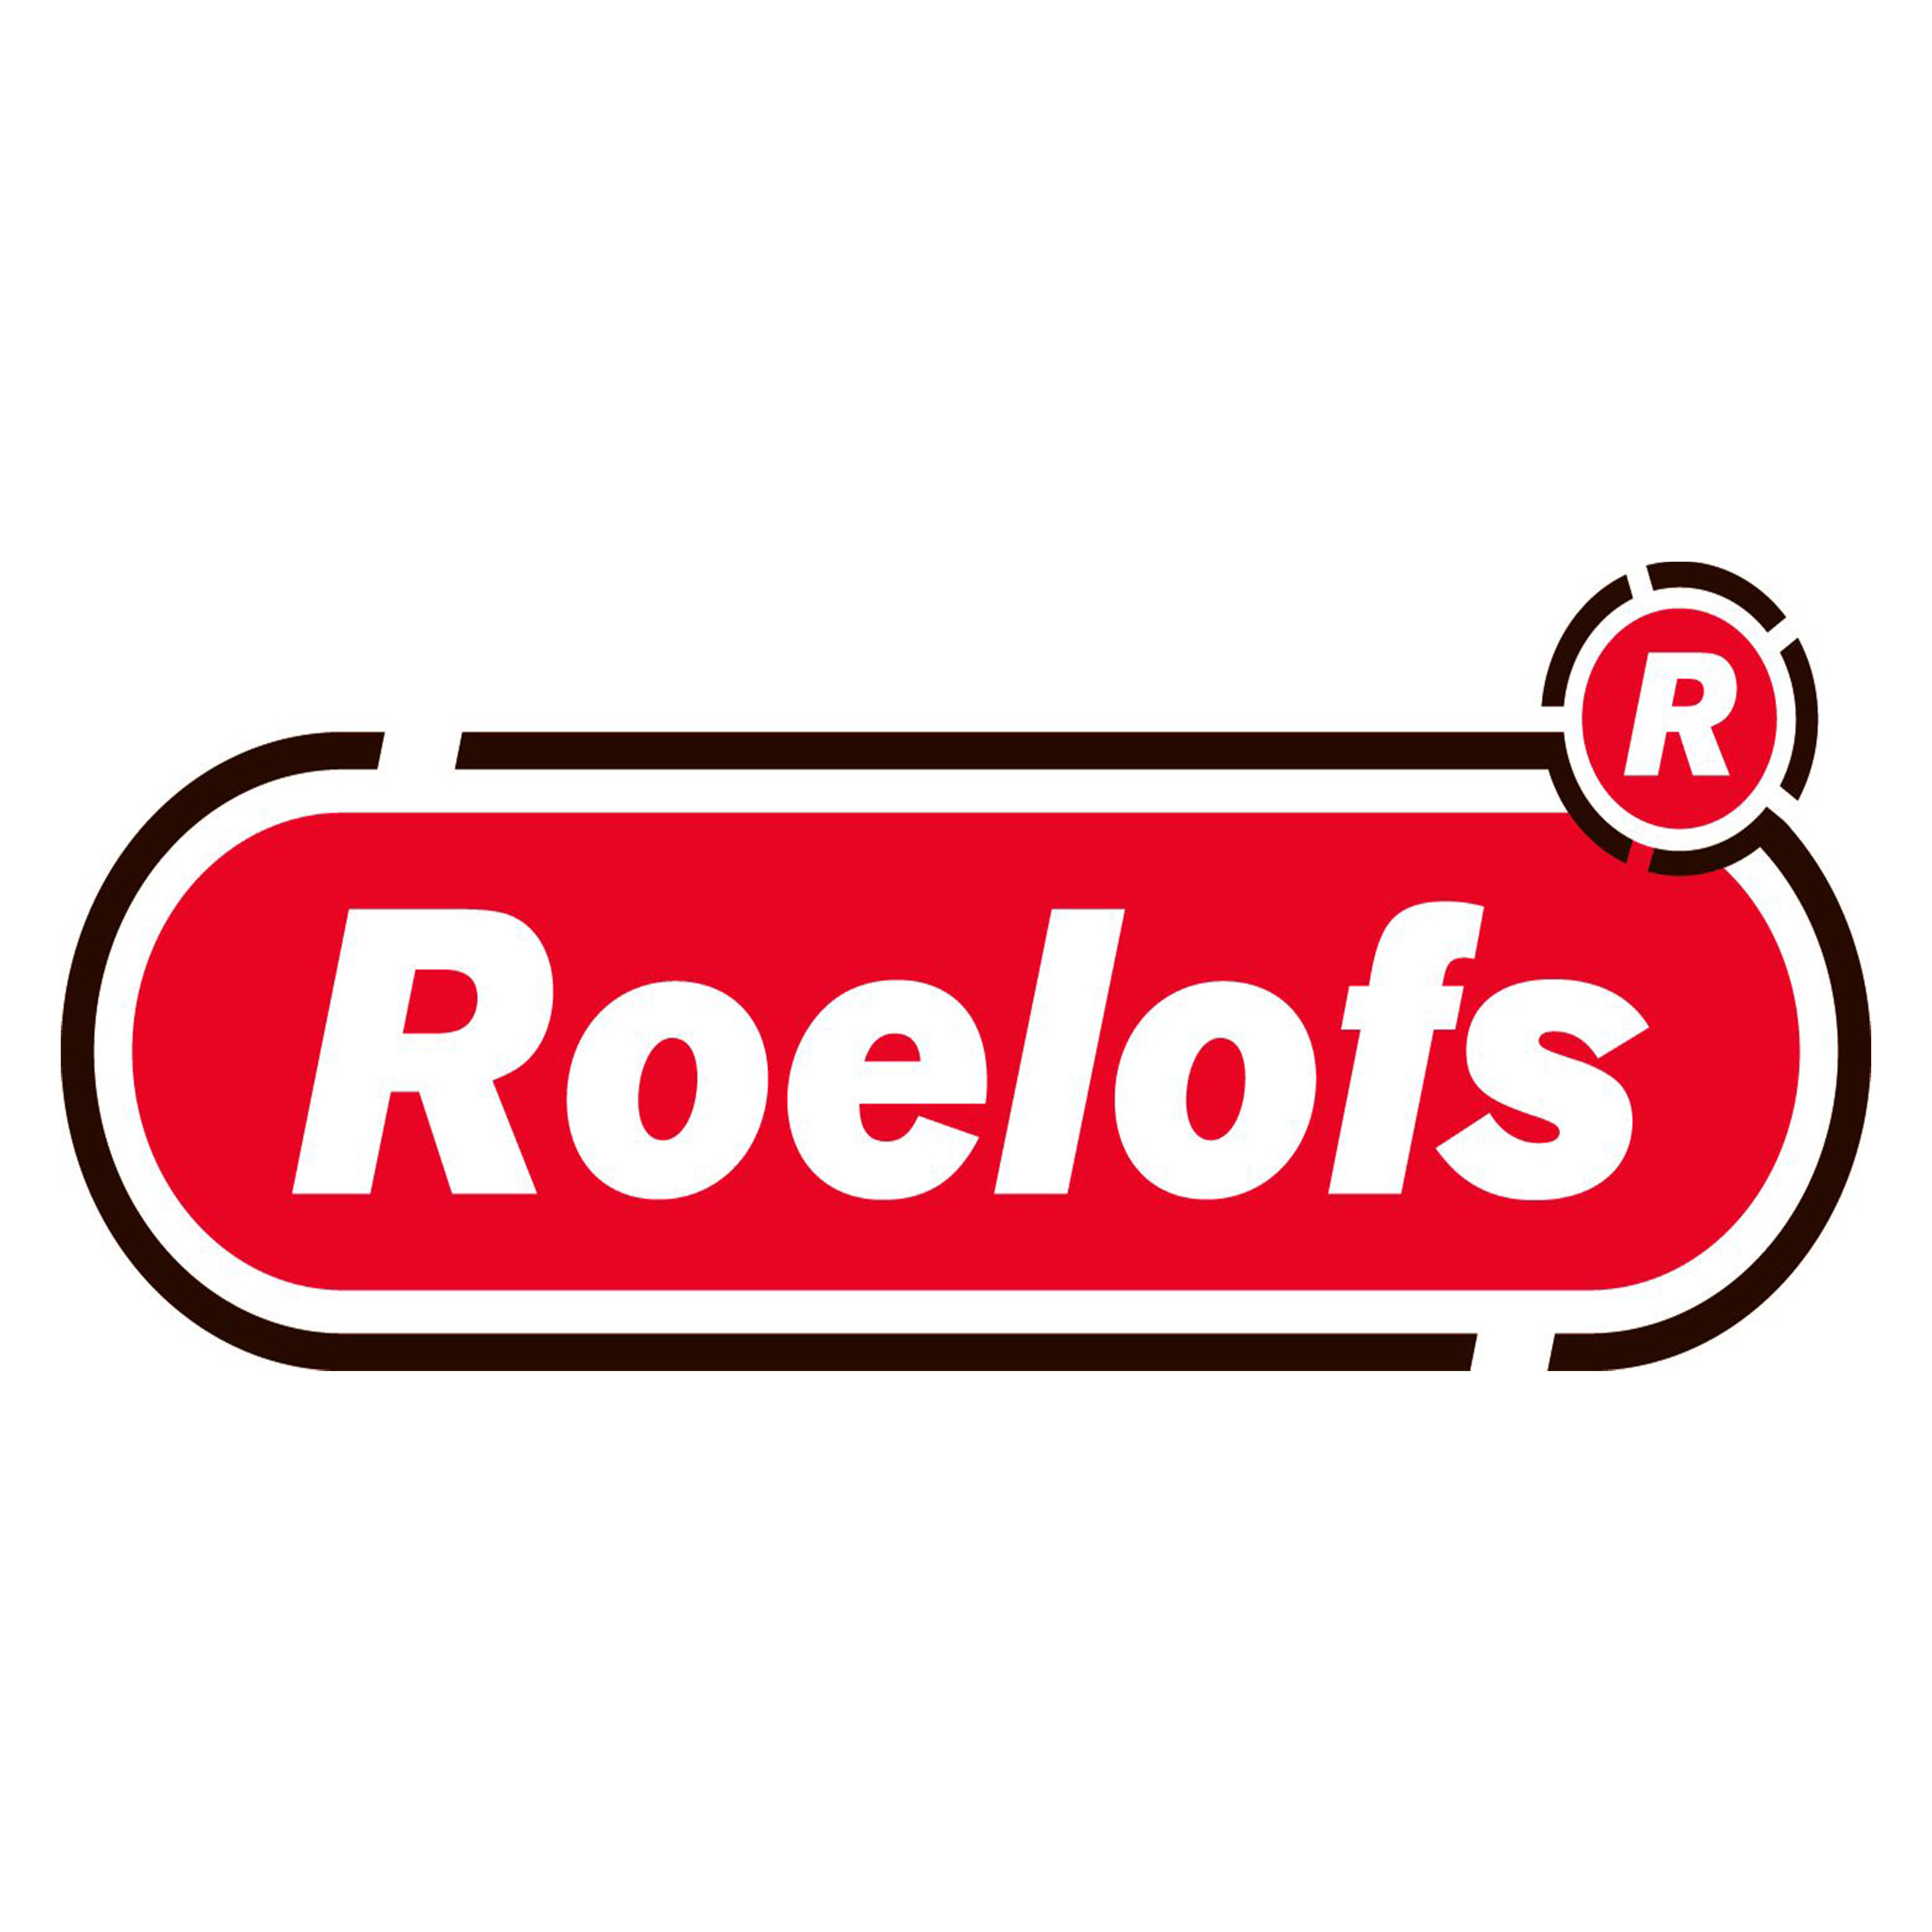 Company logo of Roelofs